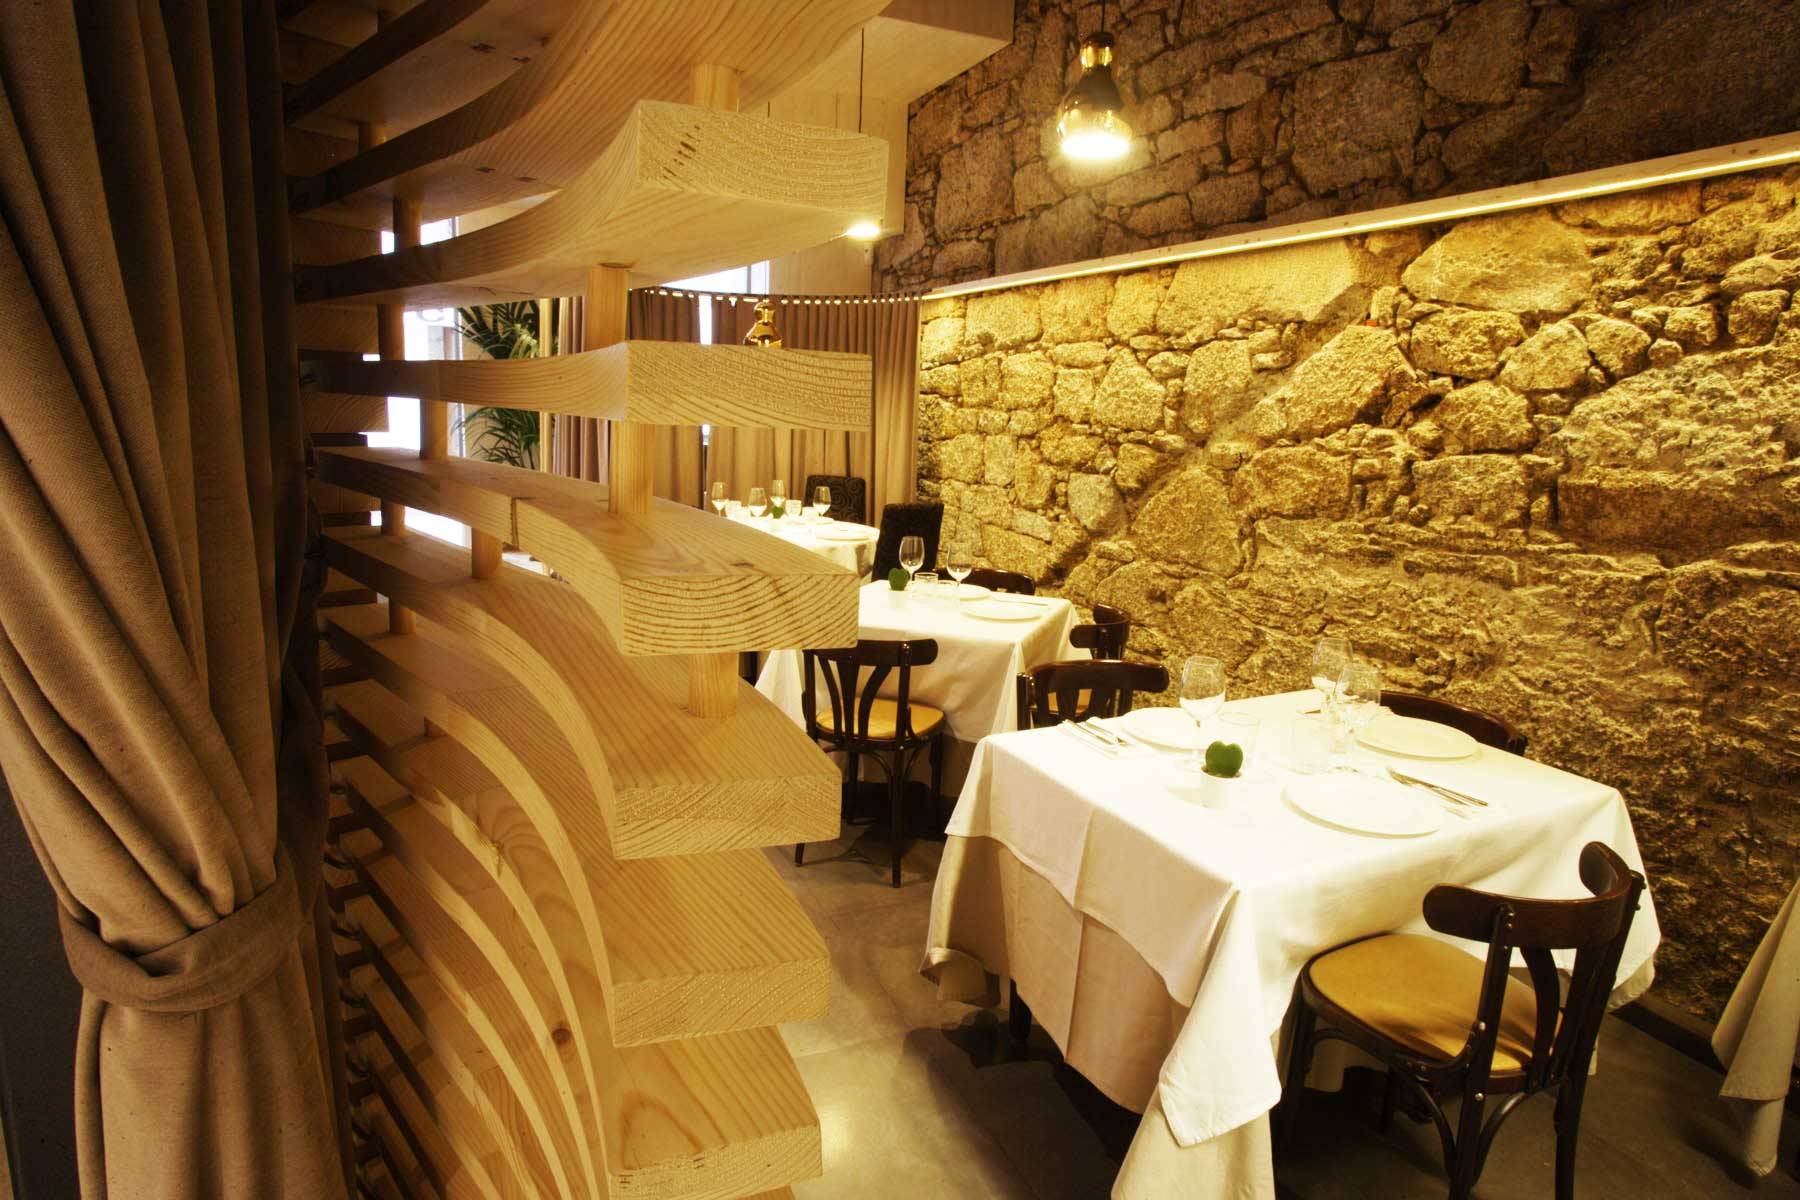 Cocina gallega creativa especializada en marisco con una decoración clásica y moderna ubicada en el centro de A Coruña.          